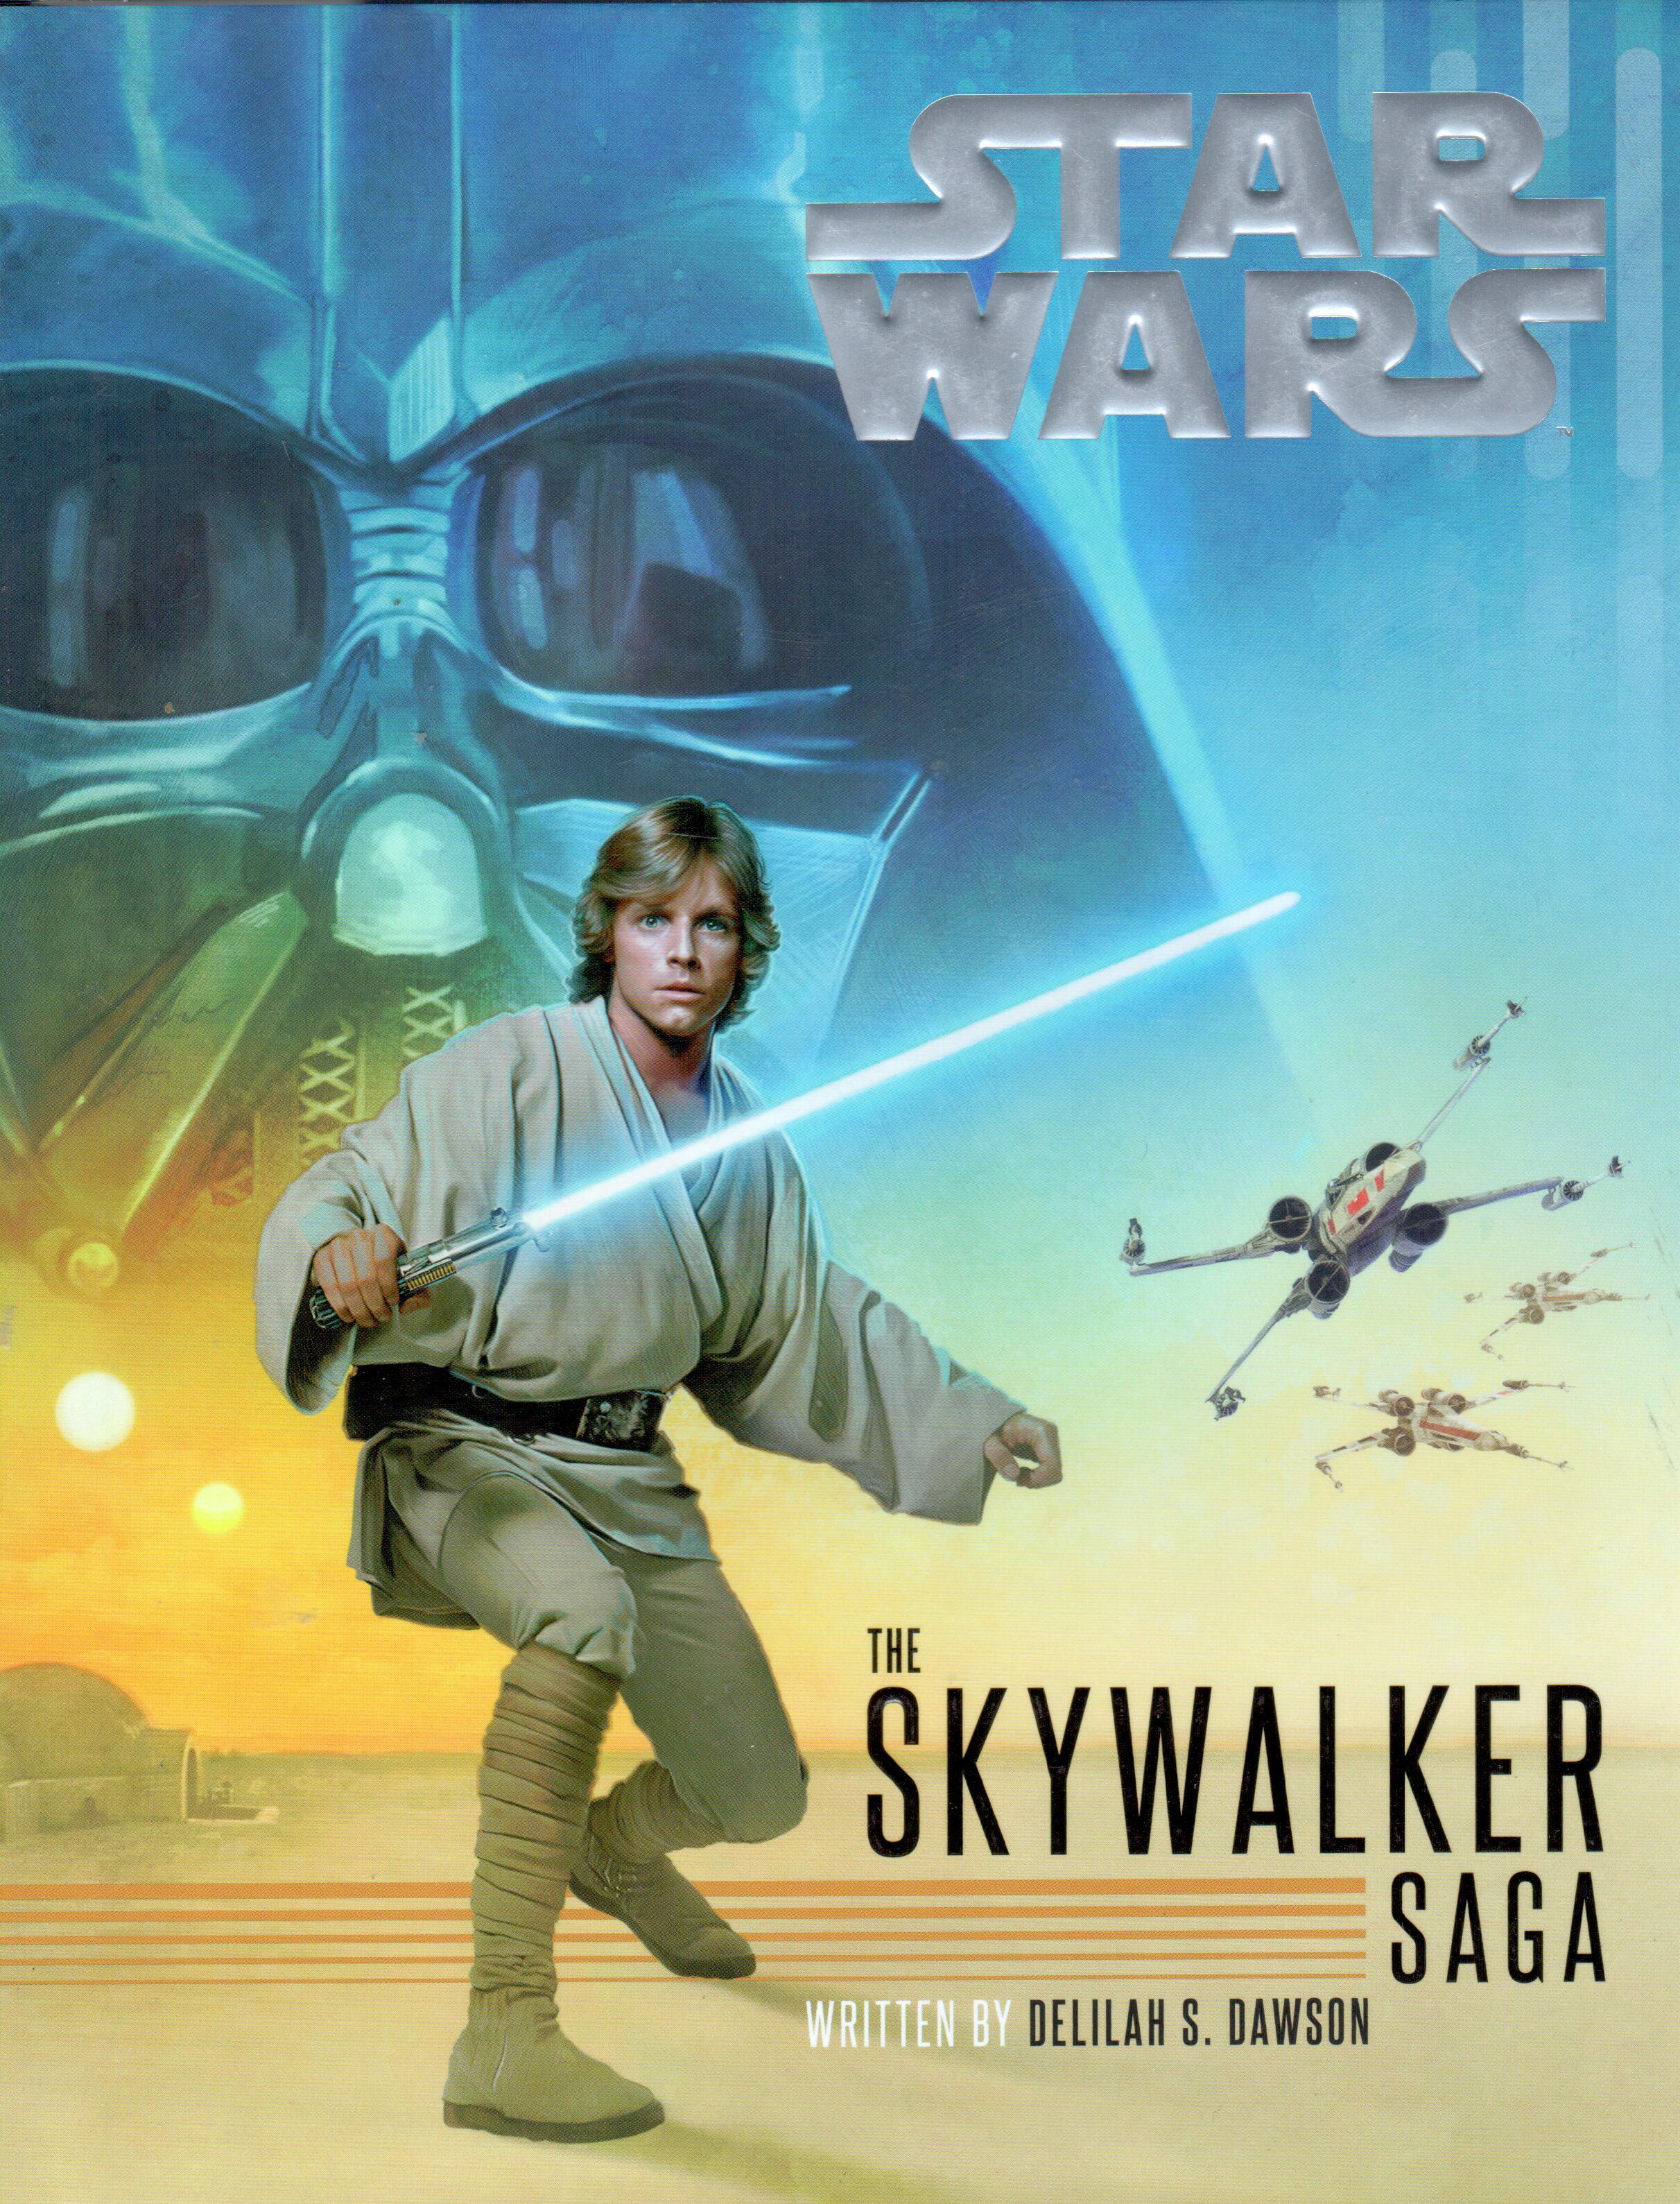 Star Wars: The Skywalker SAGA